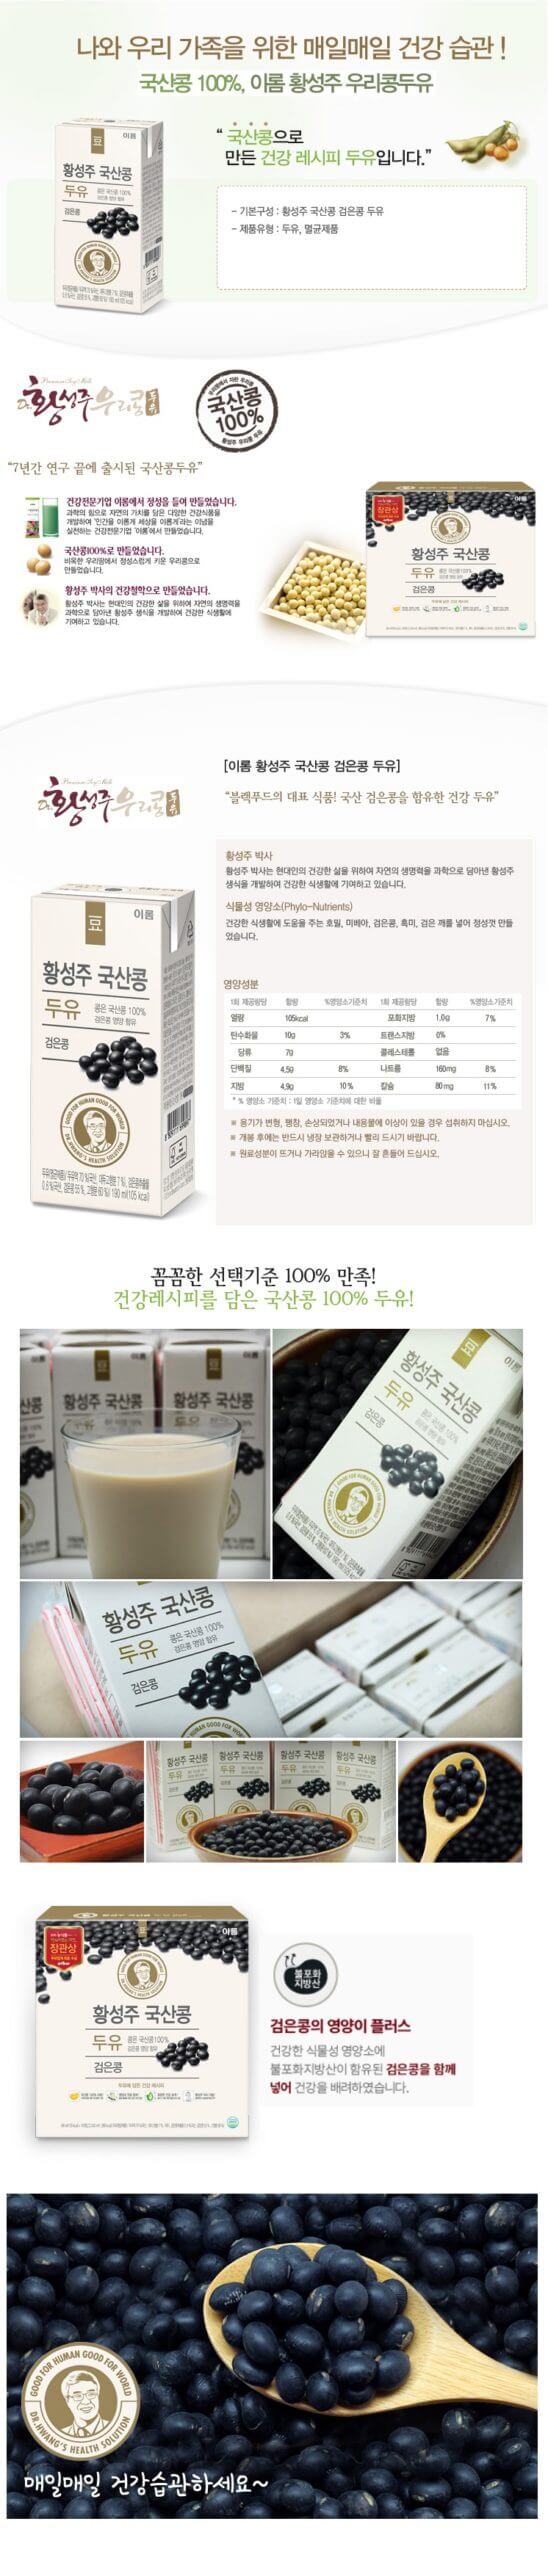 韓國食品-[이롬]황성주 국산콩 두유 [검은콩] 190ml